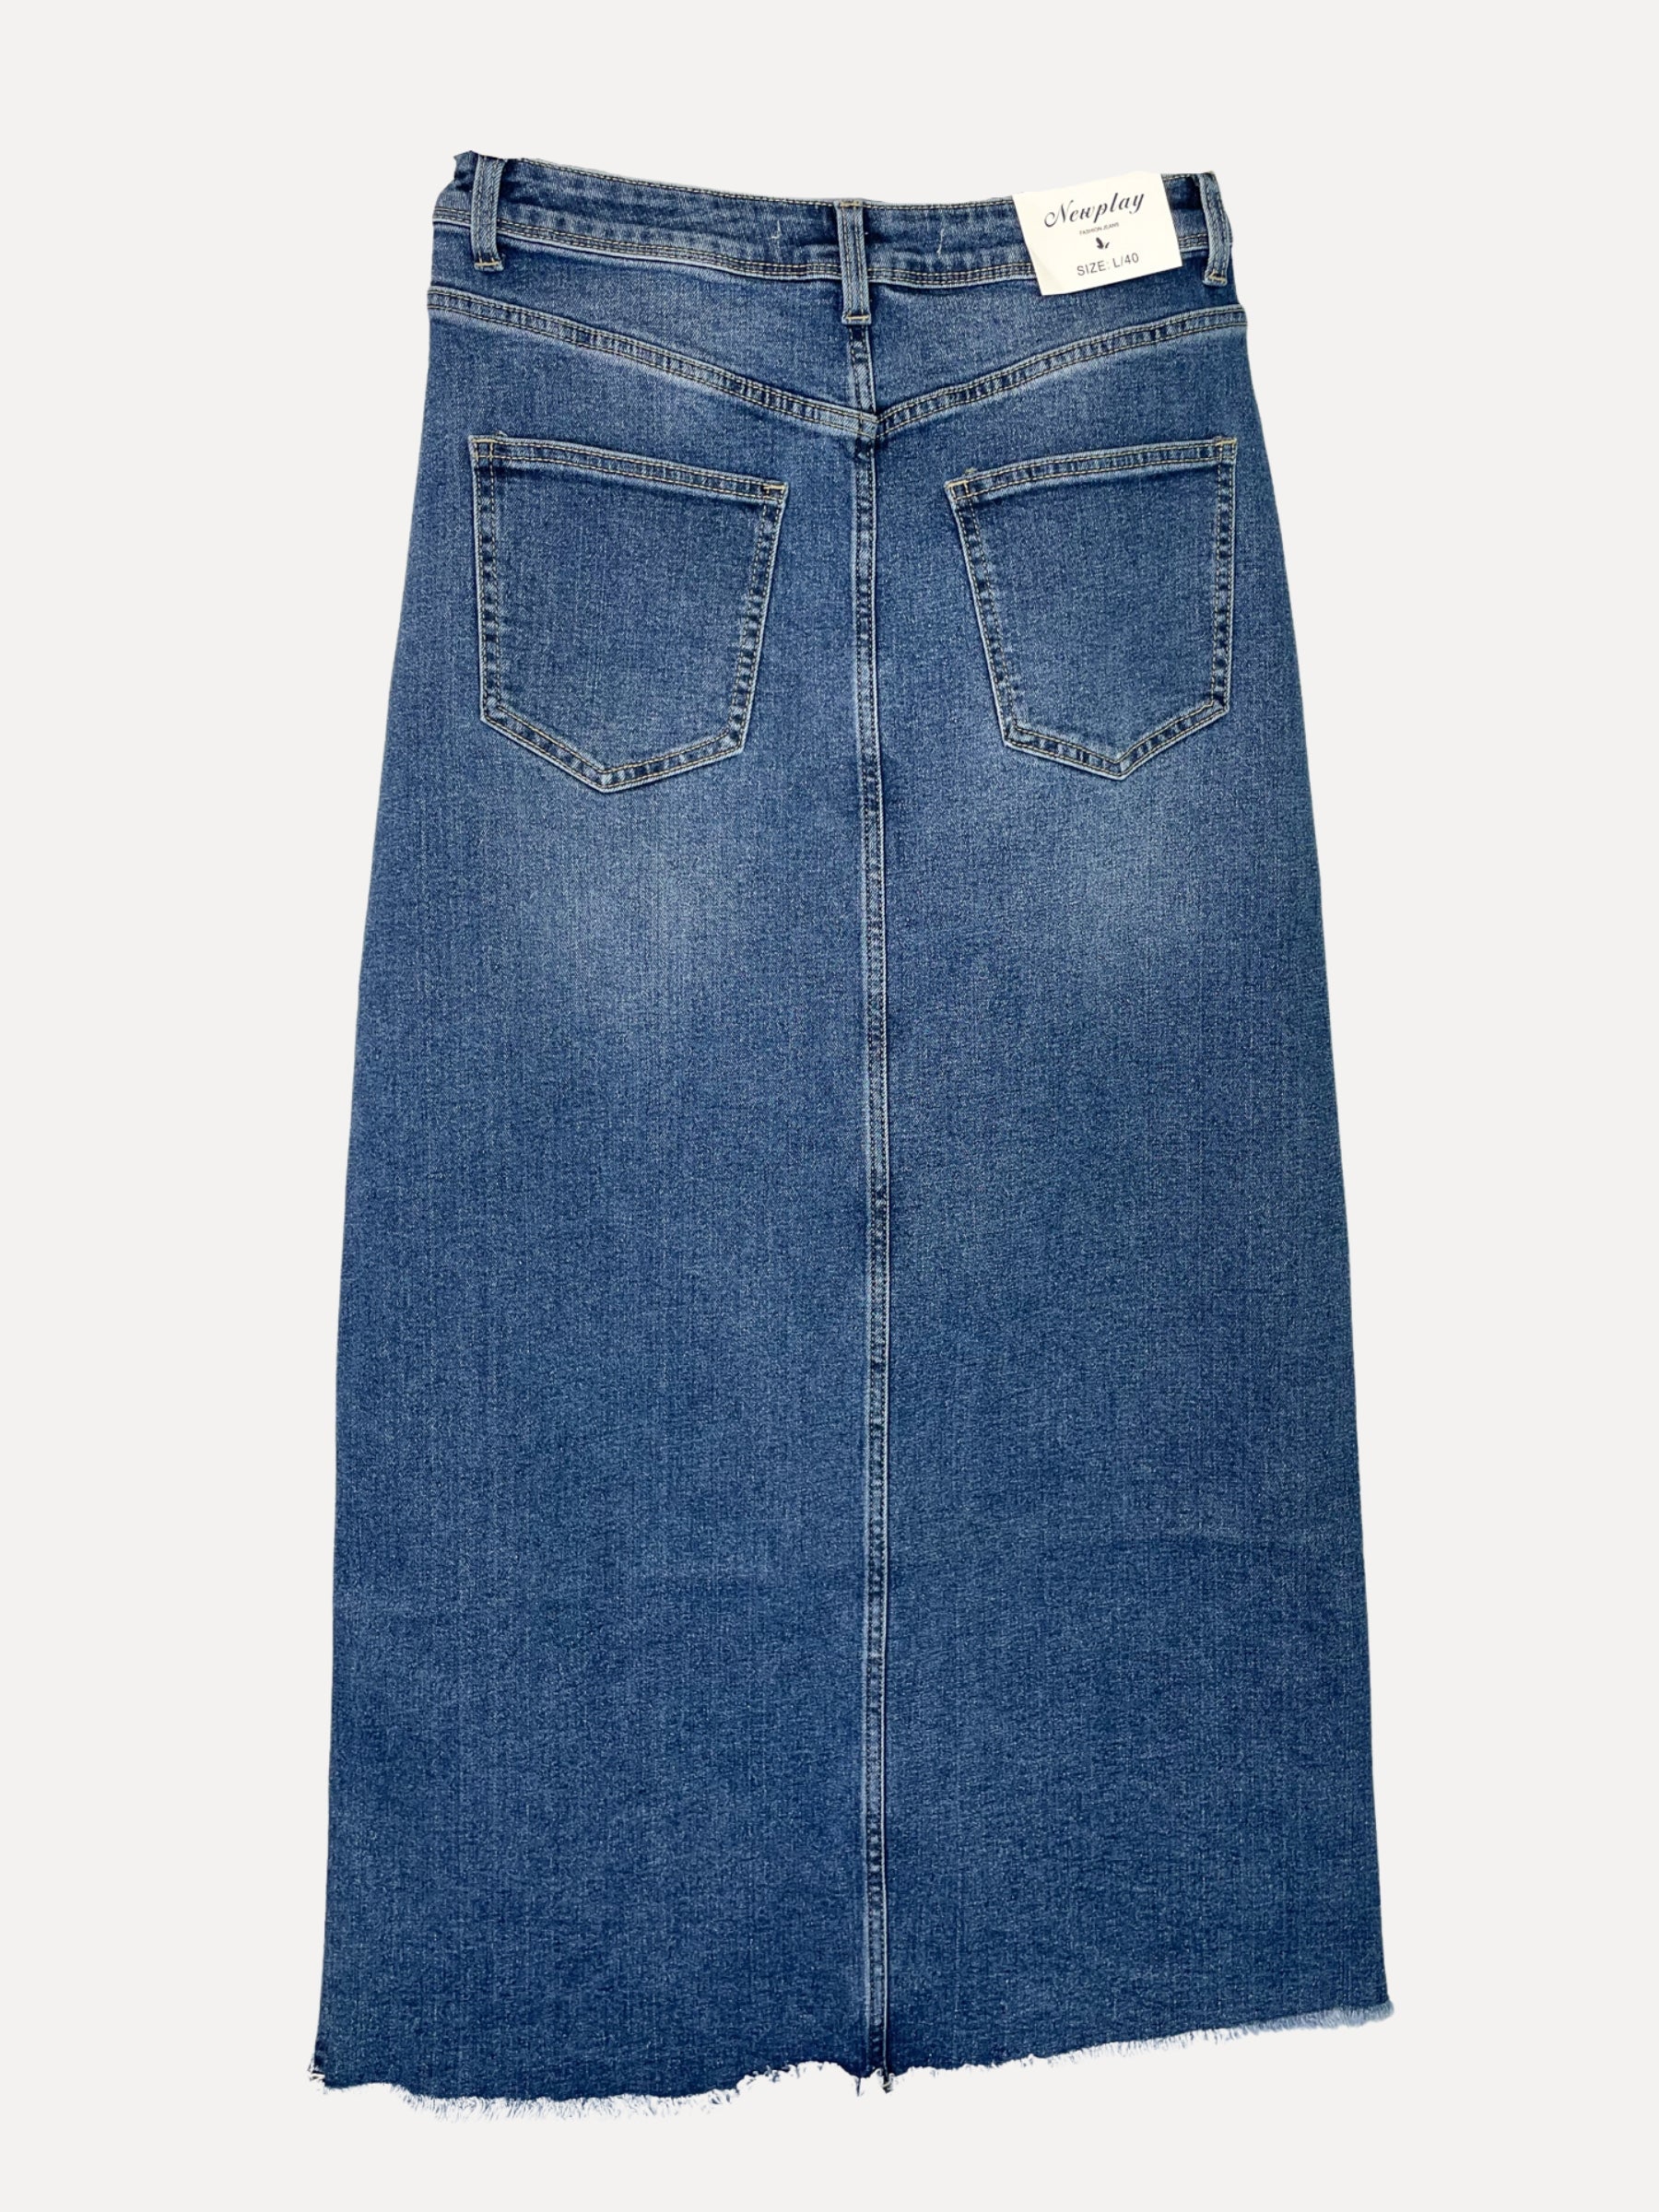 Jeans Skirt 3208, Dark Denim